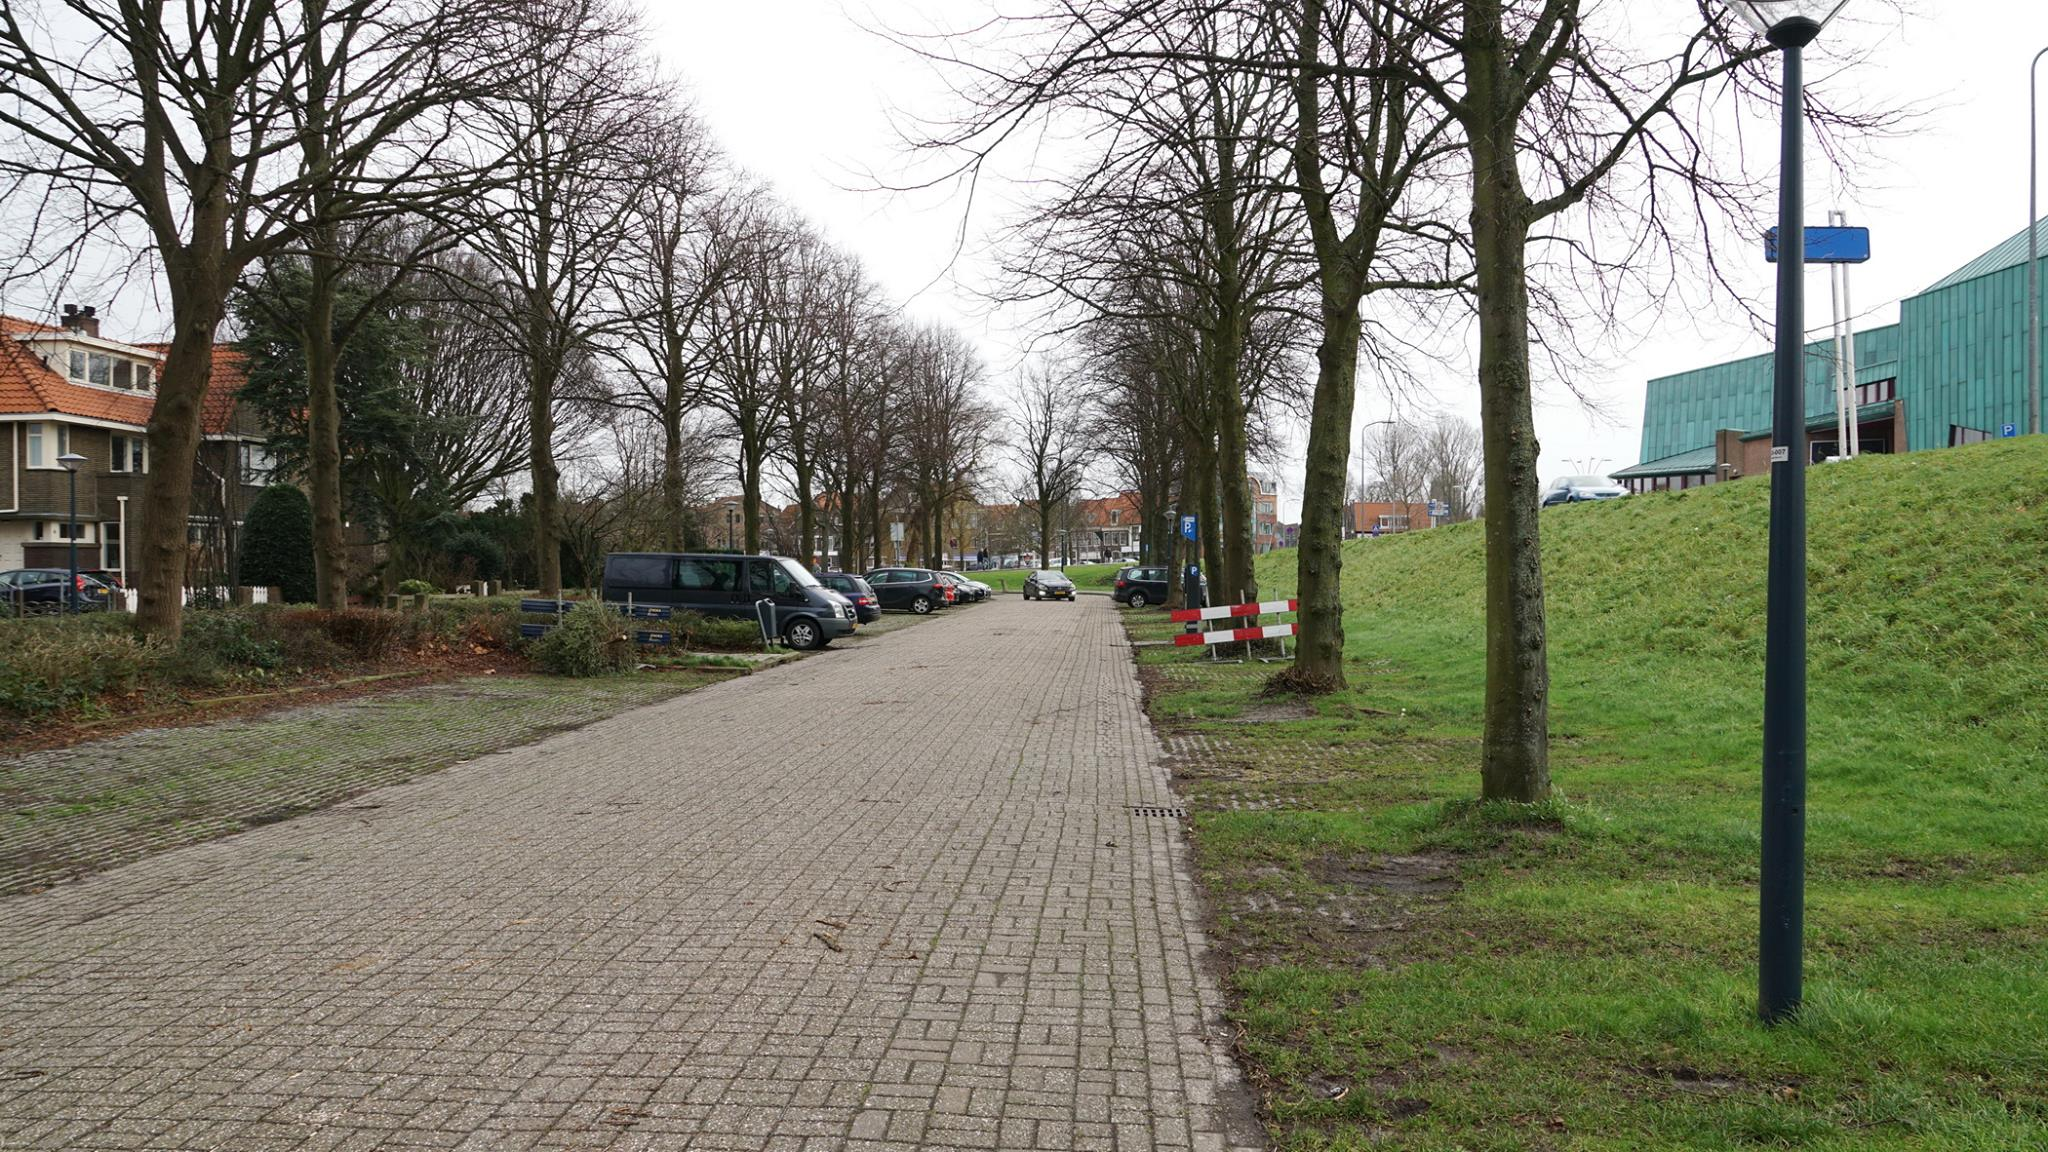 Hoorn Lokaal wil gratis parkeren op Superkoopzondag aan de rand van de stad.